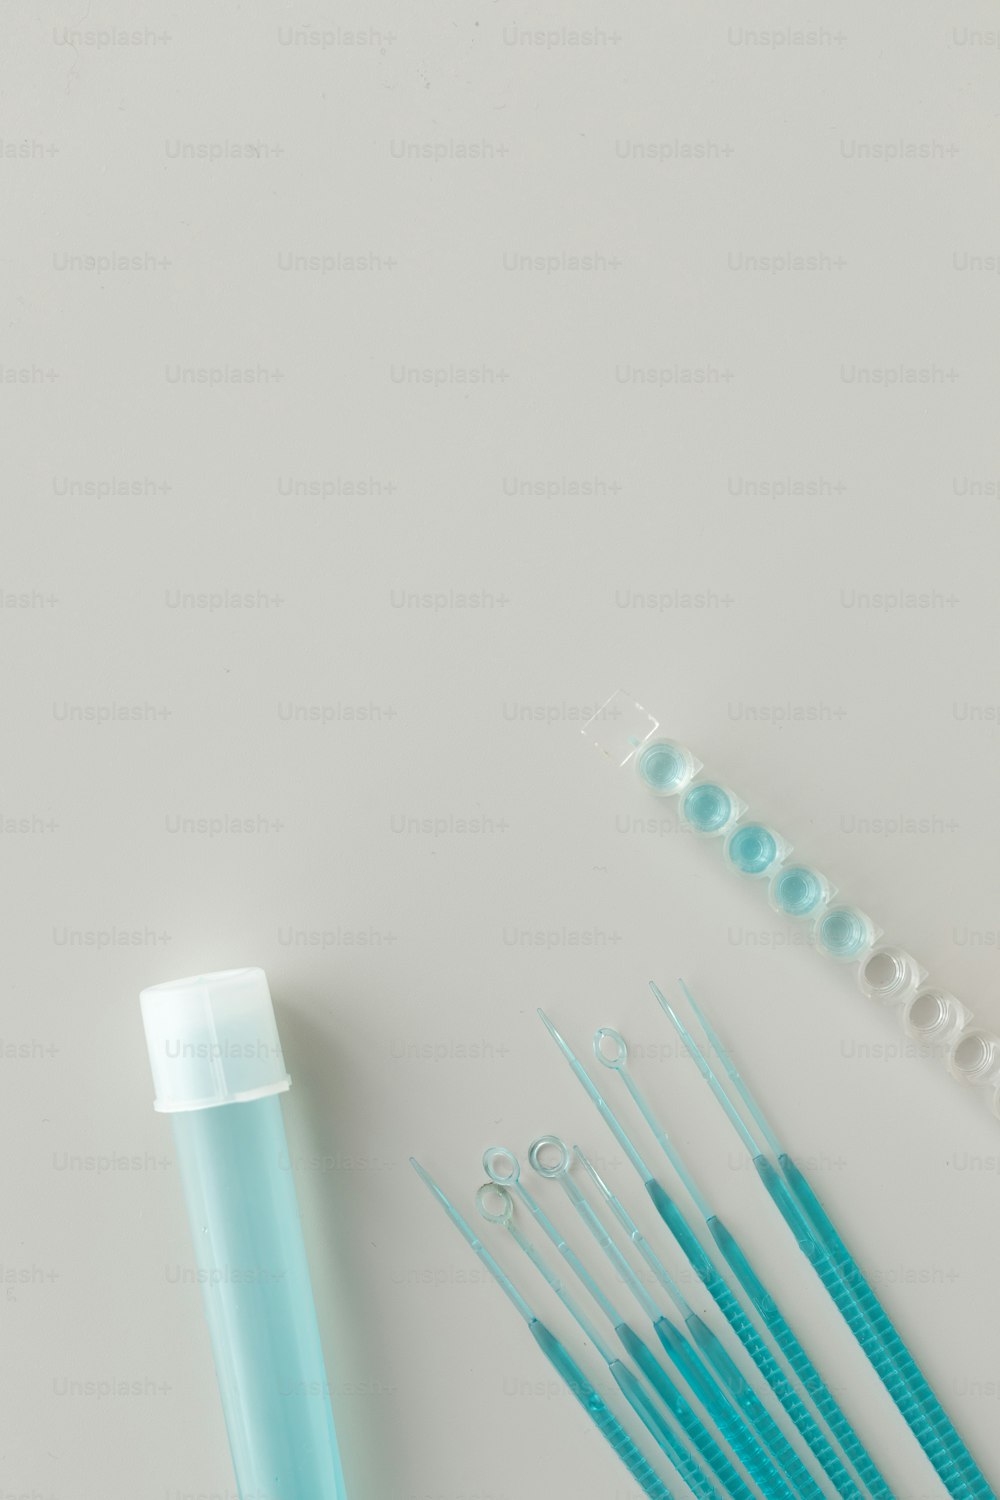 Un grupo de cepillos de dientes azules sentados junto a un tubo de pasta de dientes